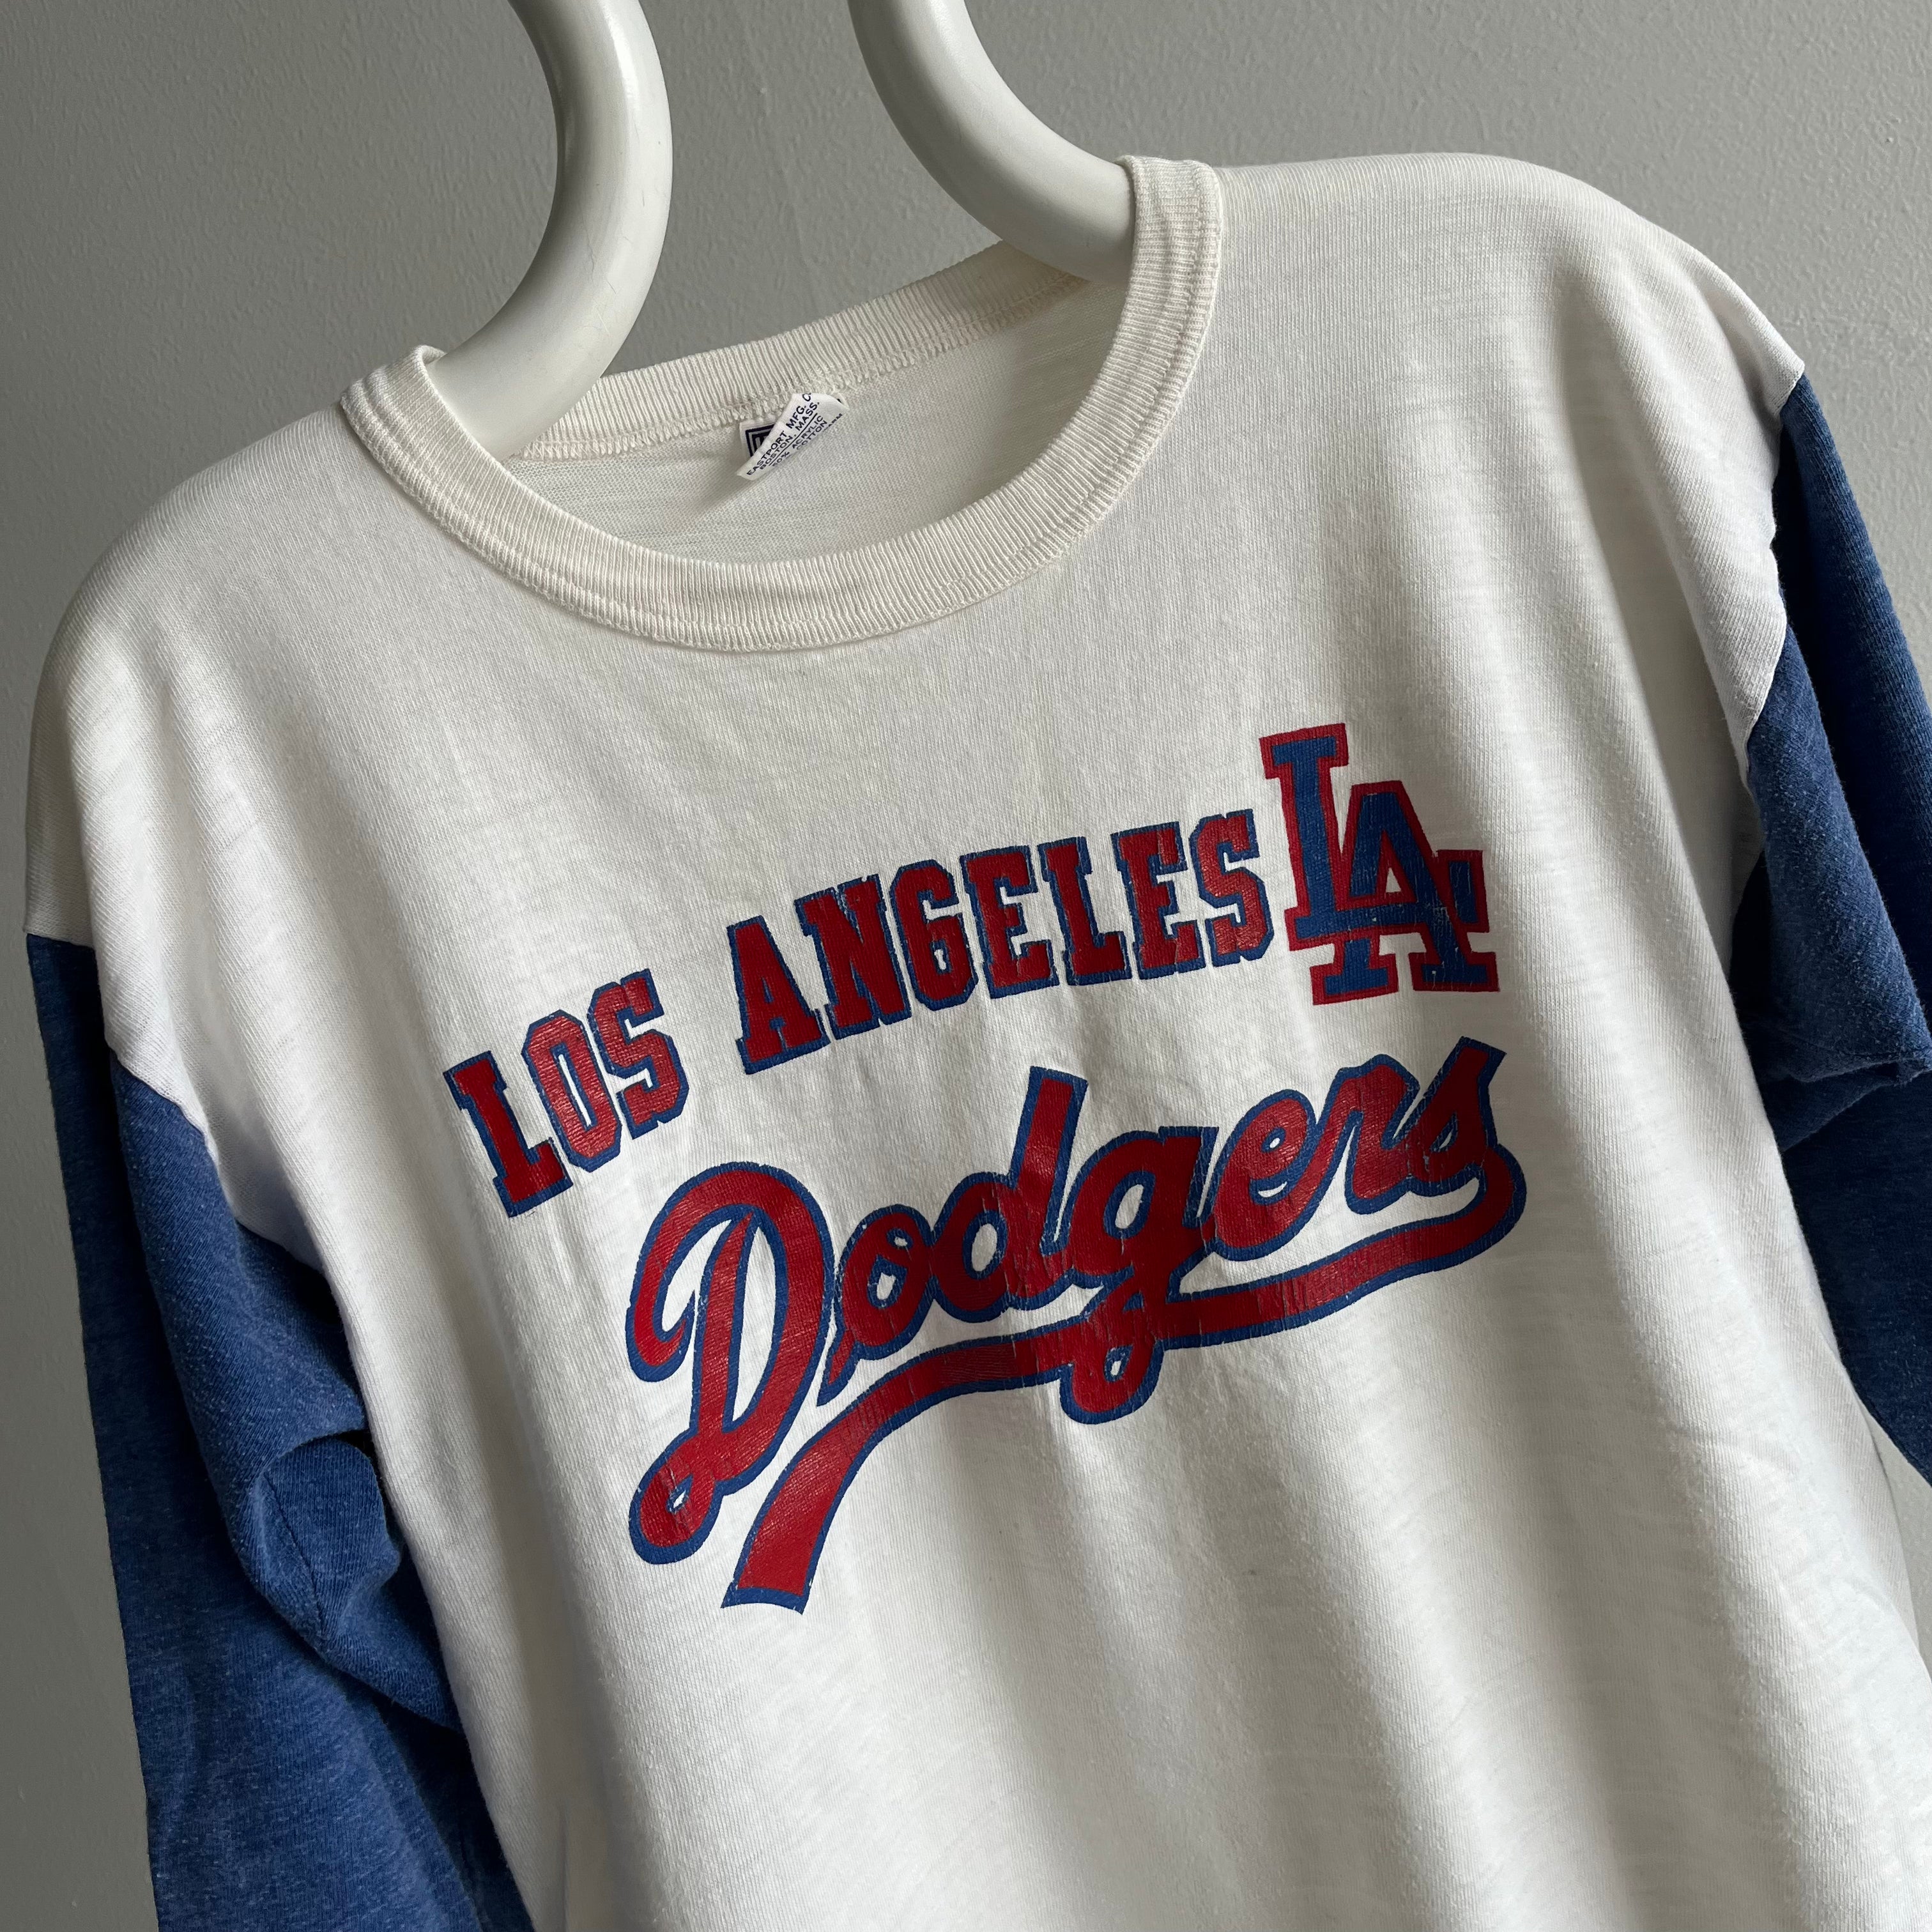 Vintage Los Angeles Dodgers Baseball Sweatshirt Tee